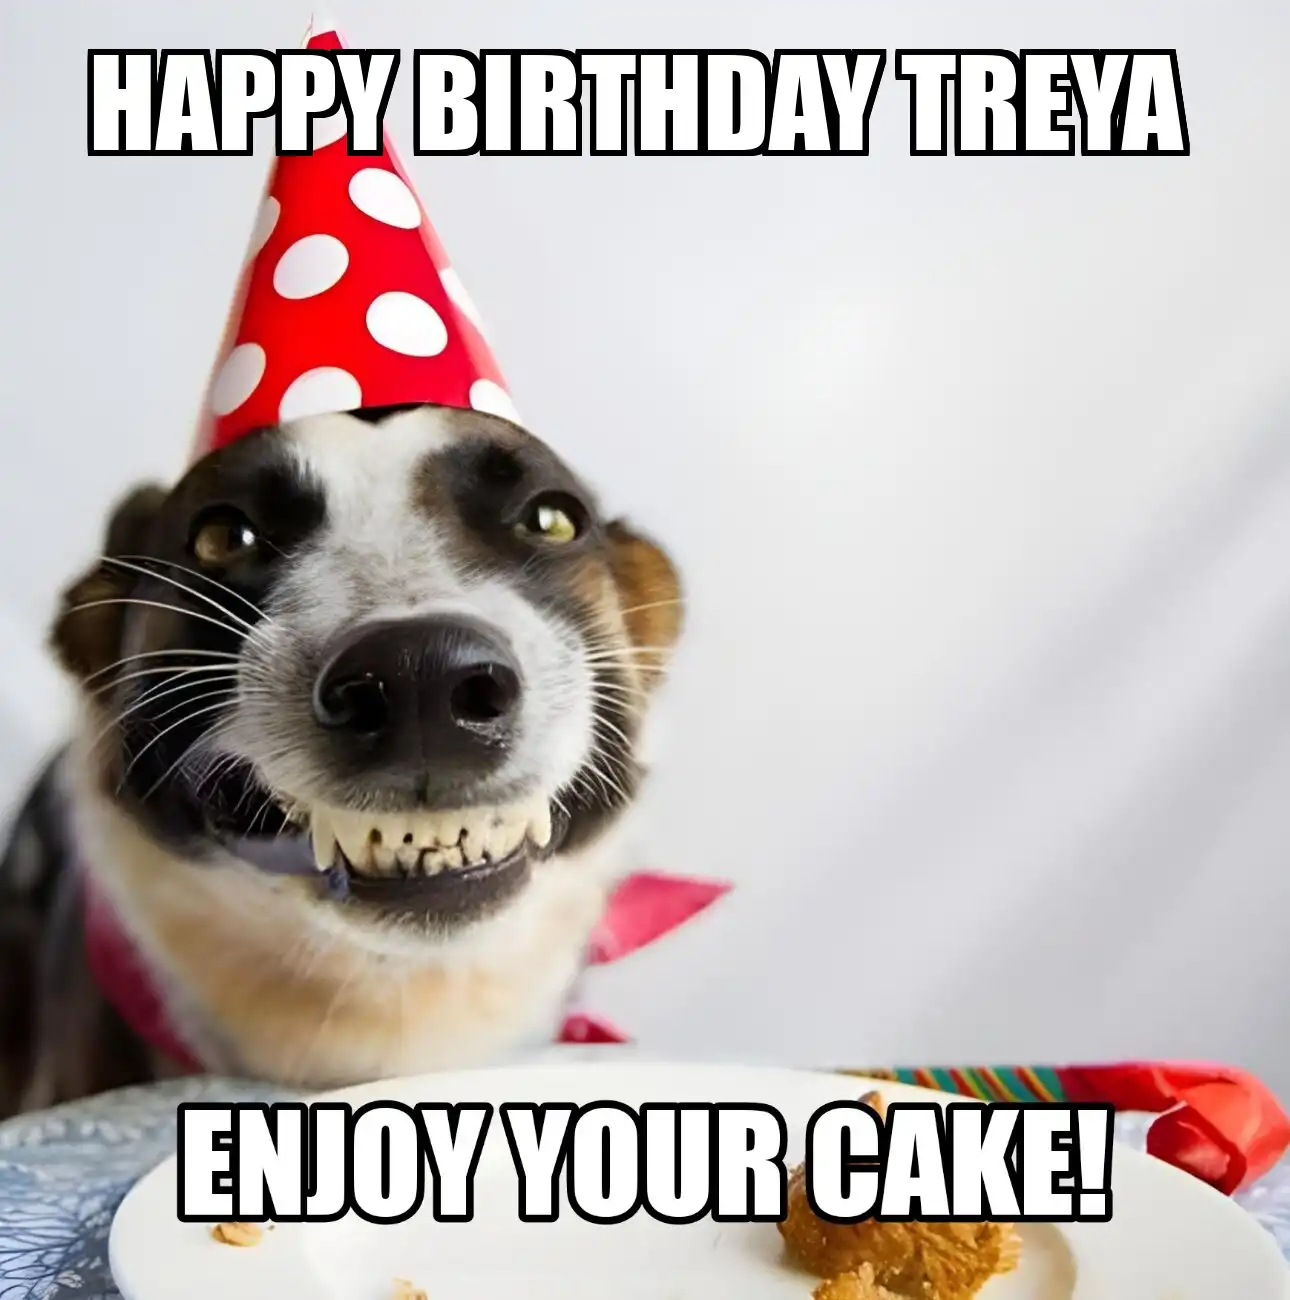 Happy Birthday Treya Enjoy Your Cake Dog Meme